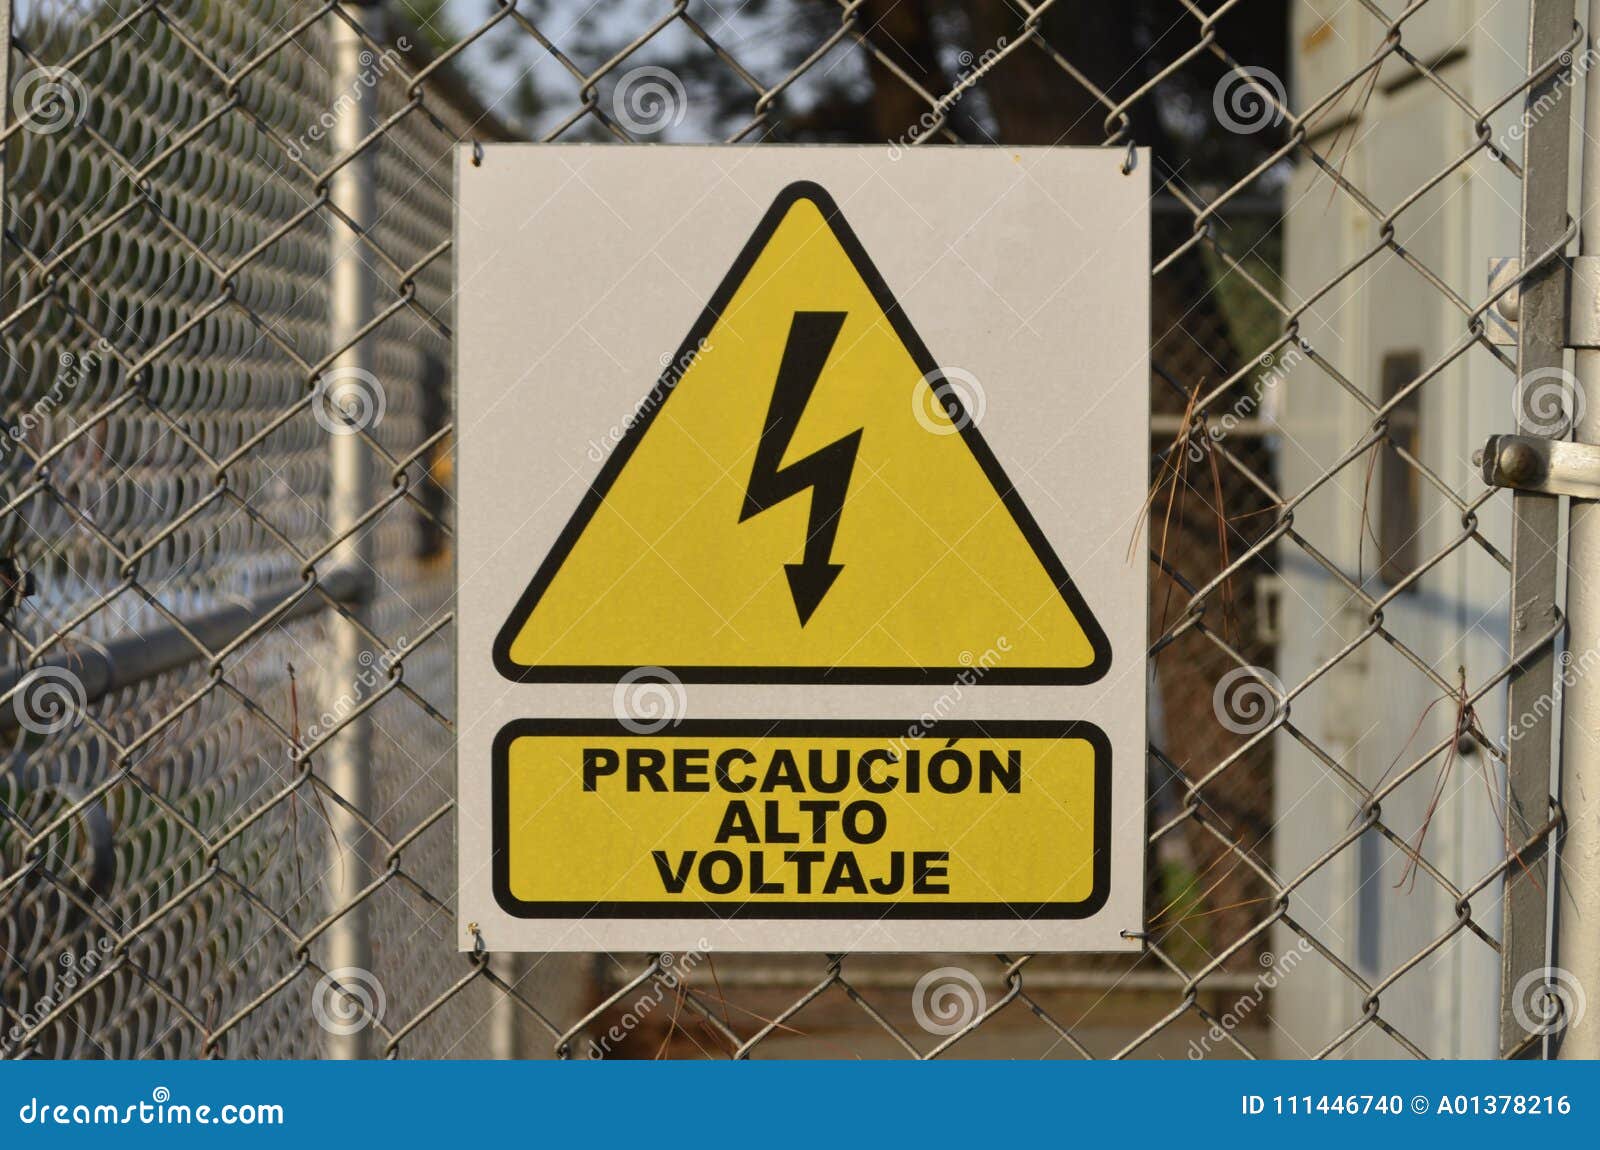 advertencia alto voltaje / high voltage warning